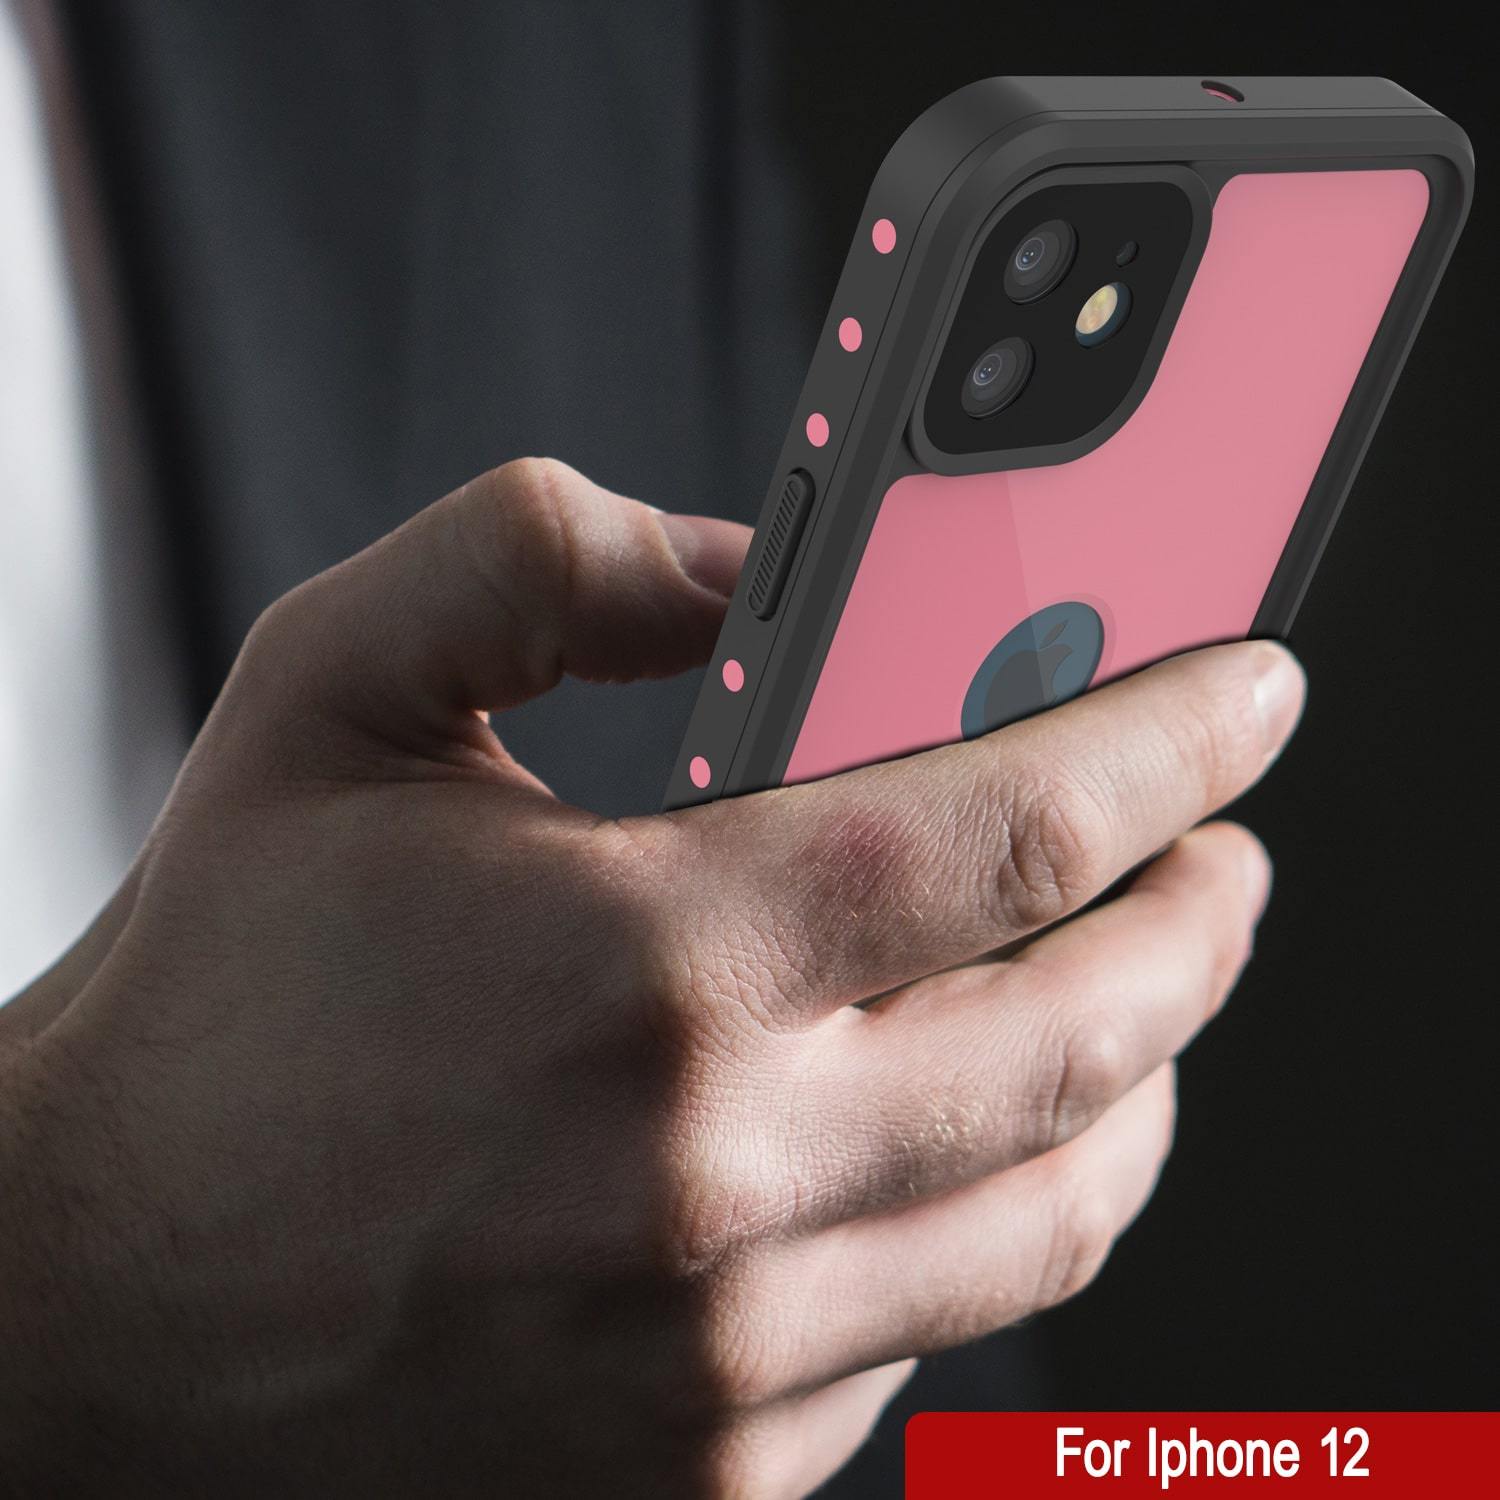 iPhone 12 Waterproof IP68 Case, Punkcase [Pink] [StudStar Series] [Slim Fit] [Dirtproof]